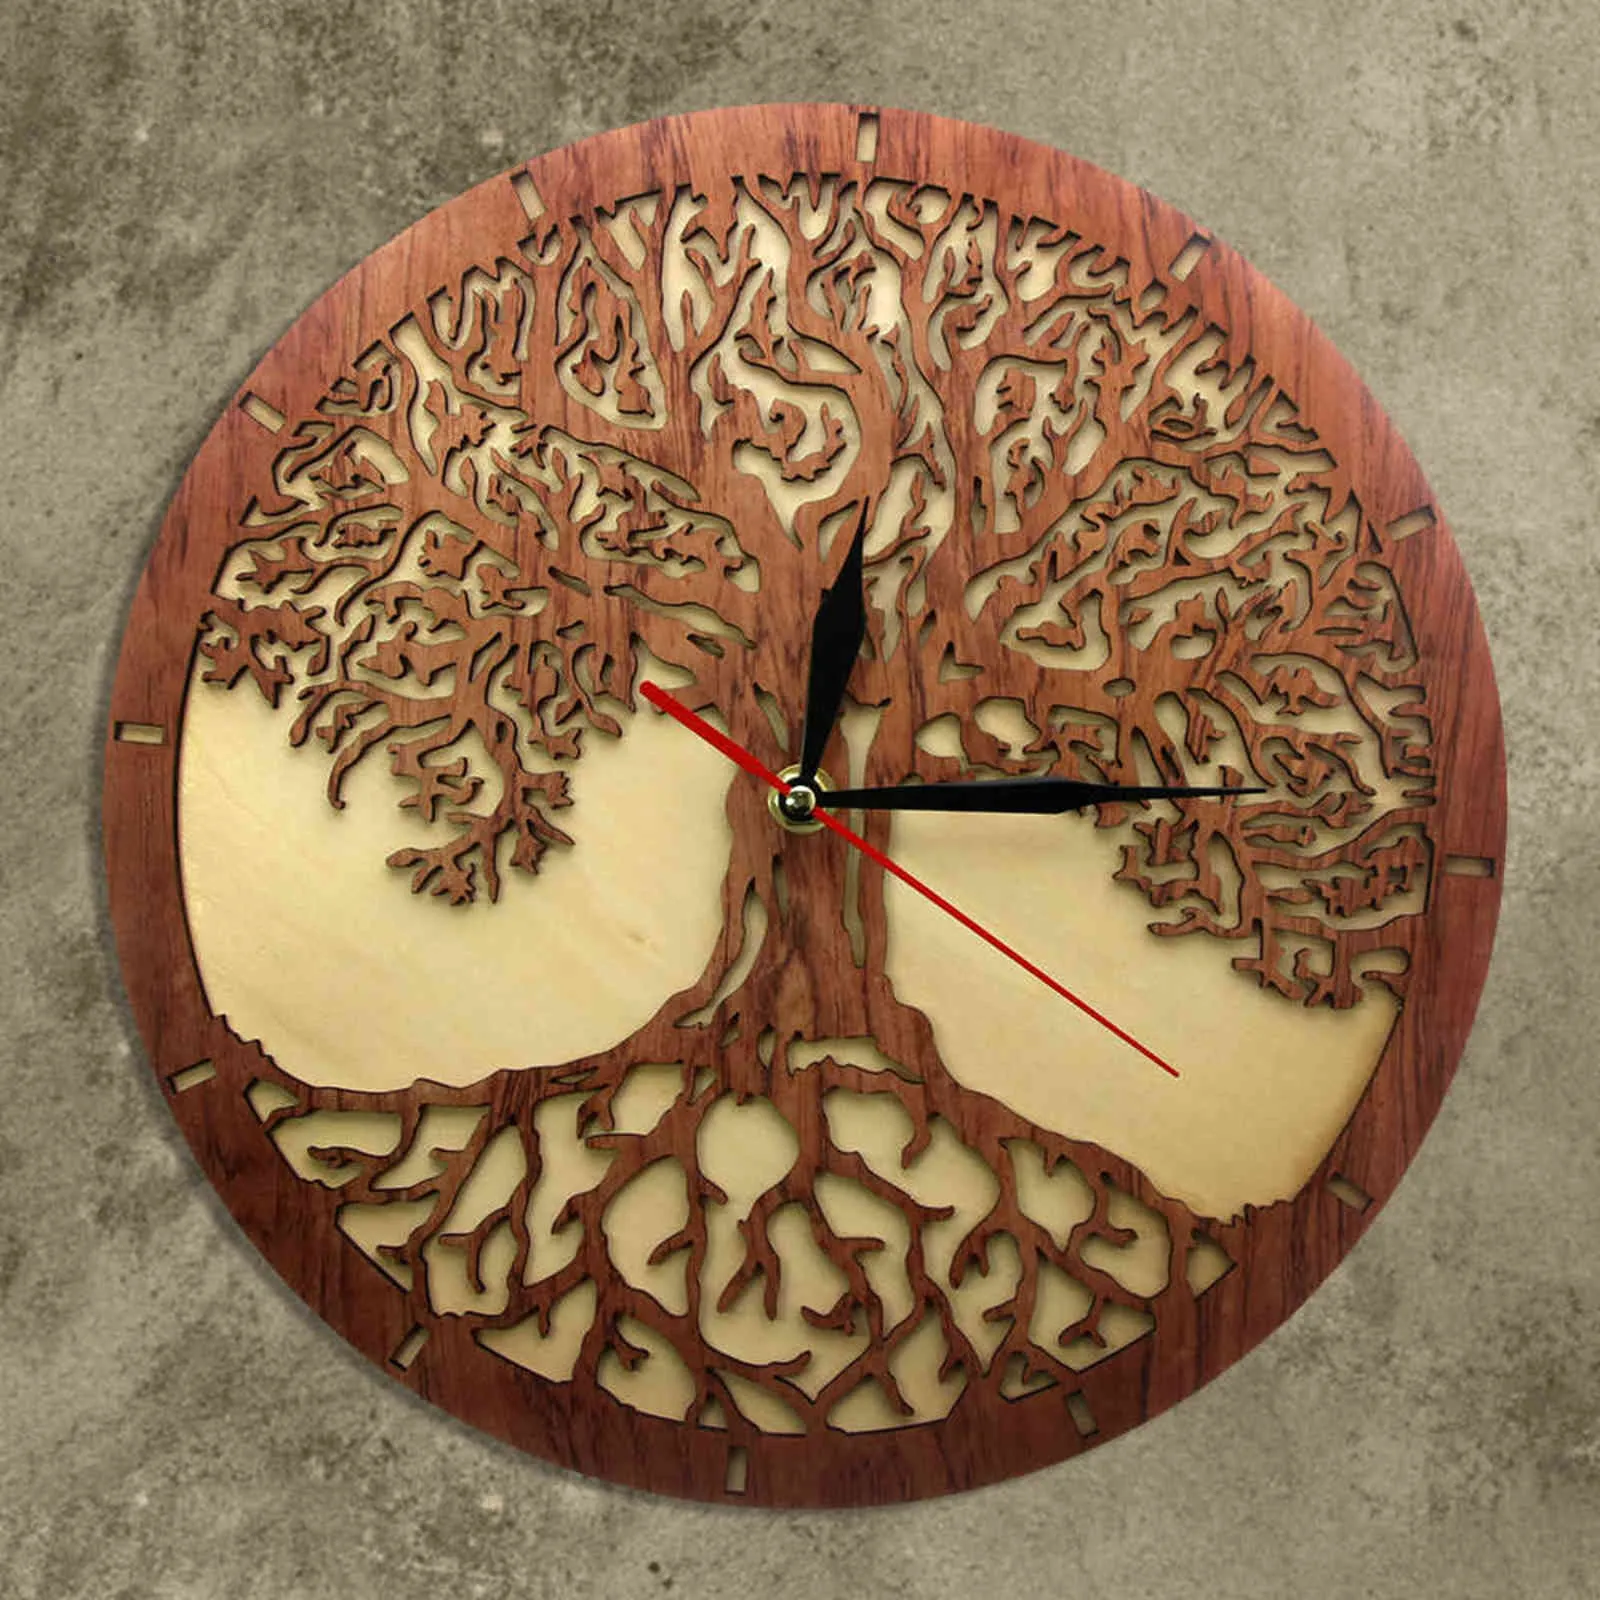 Yggdrasil Árbol de la vida Reloj de pared de madera Geometría sagrada Árbol mágico Decoración para el hogar Barrido silencioso Cocina Reloj de pared Regalo de inauguración de la casa 211110